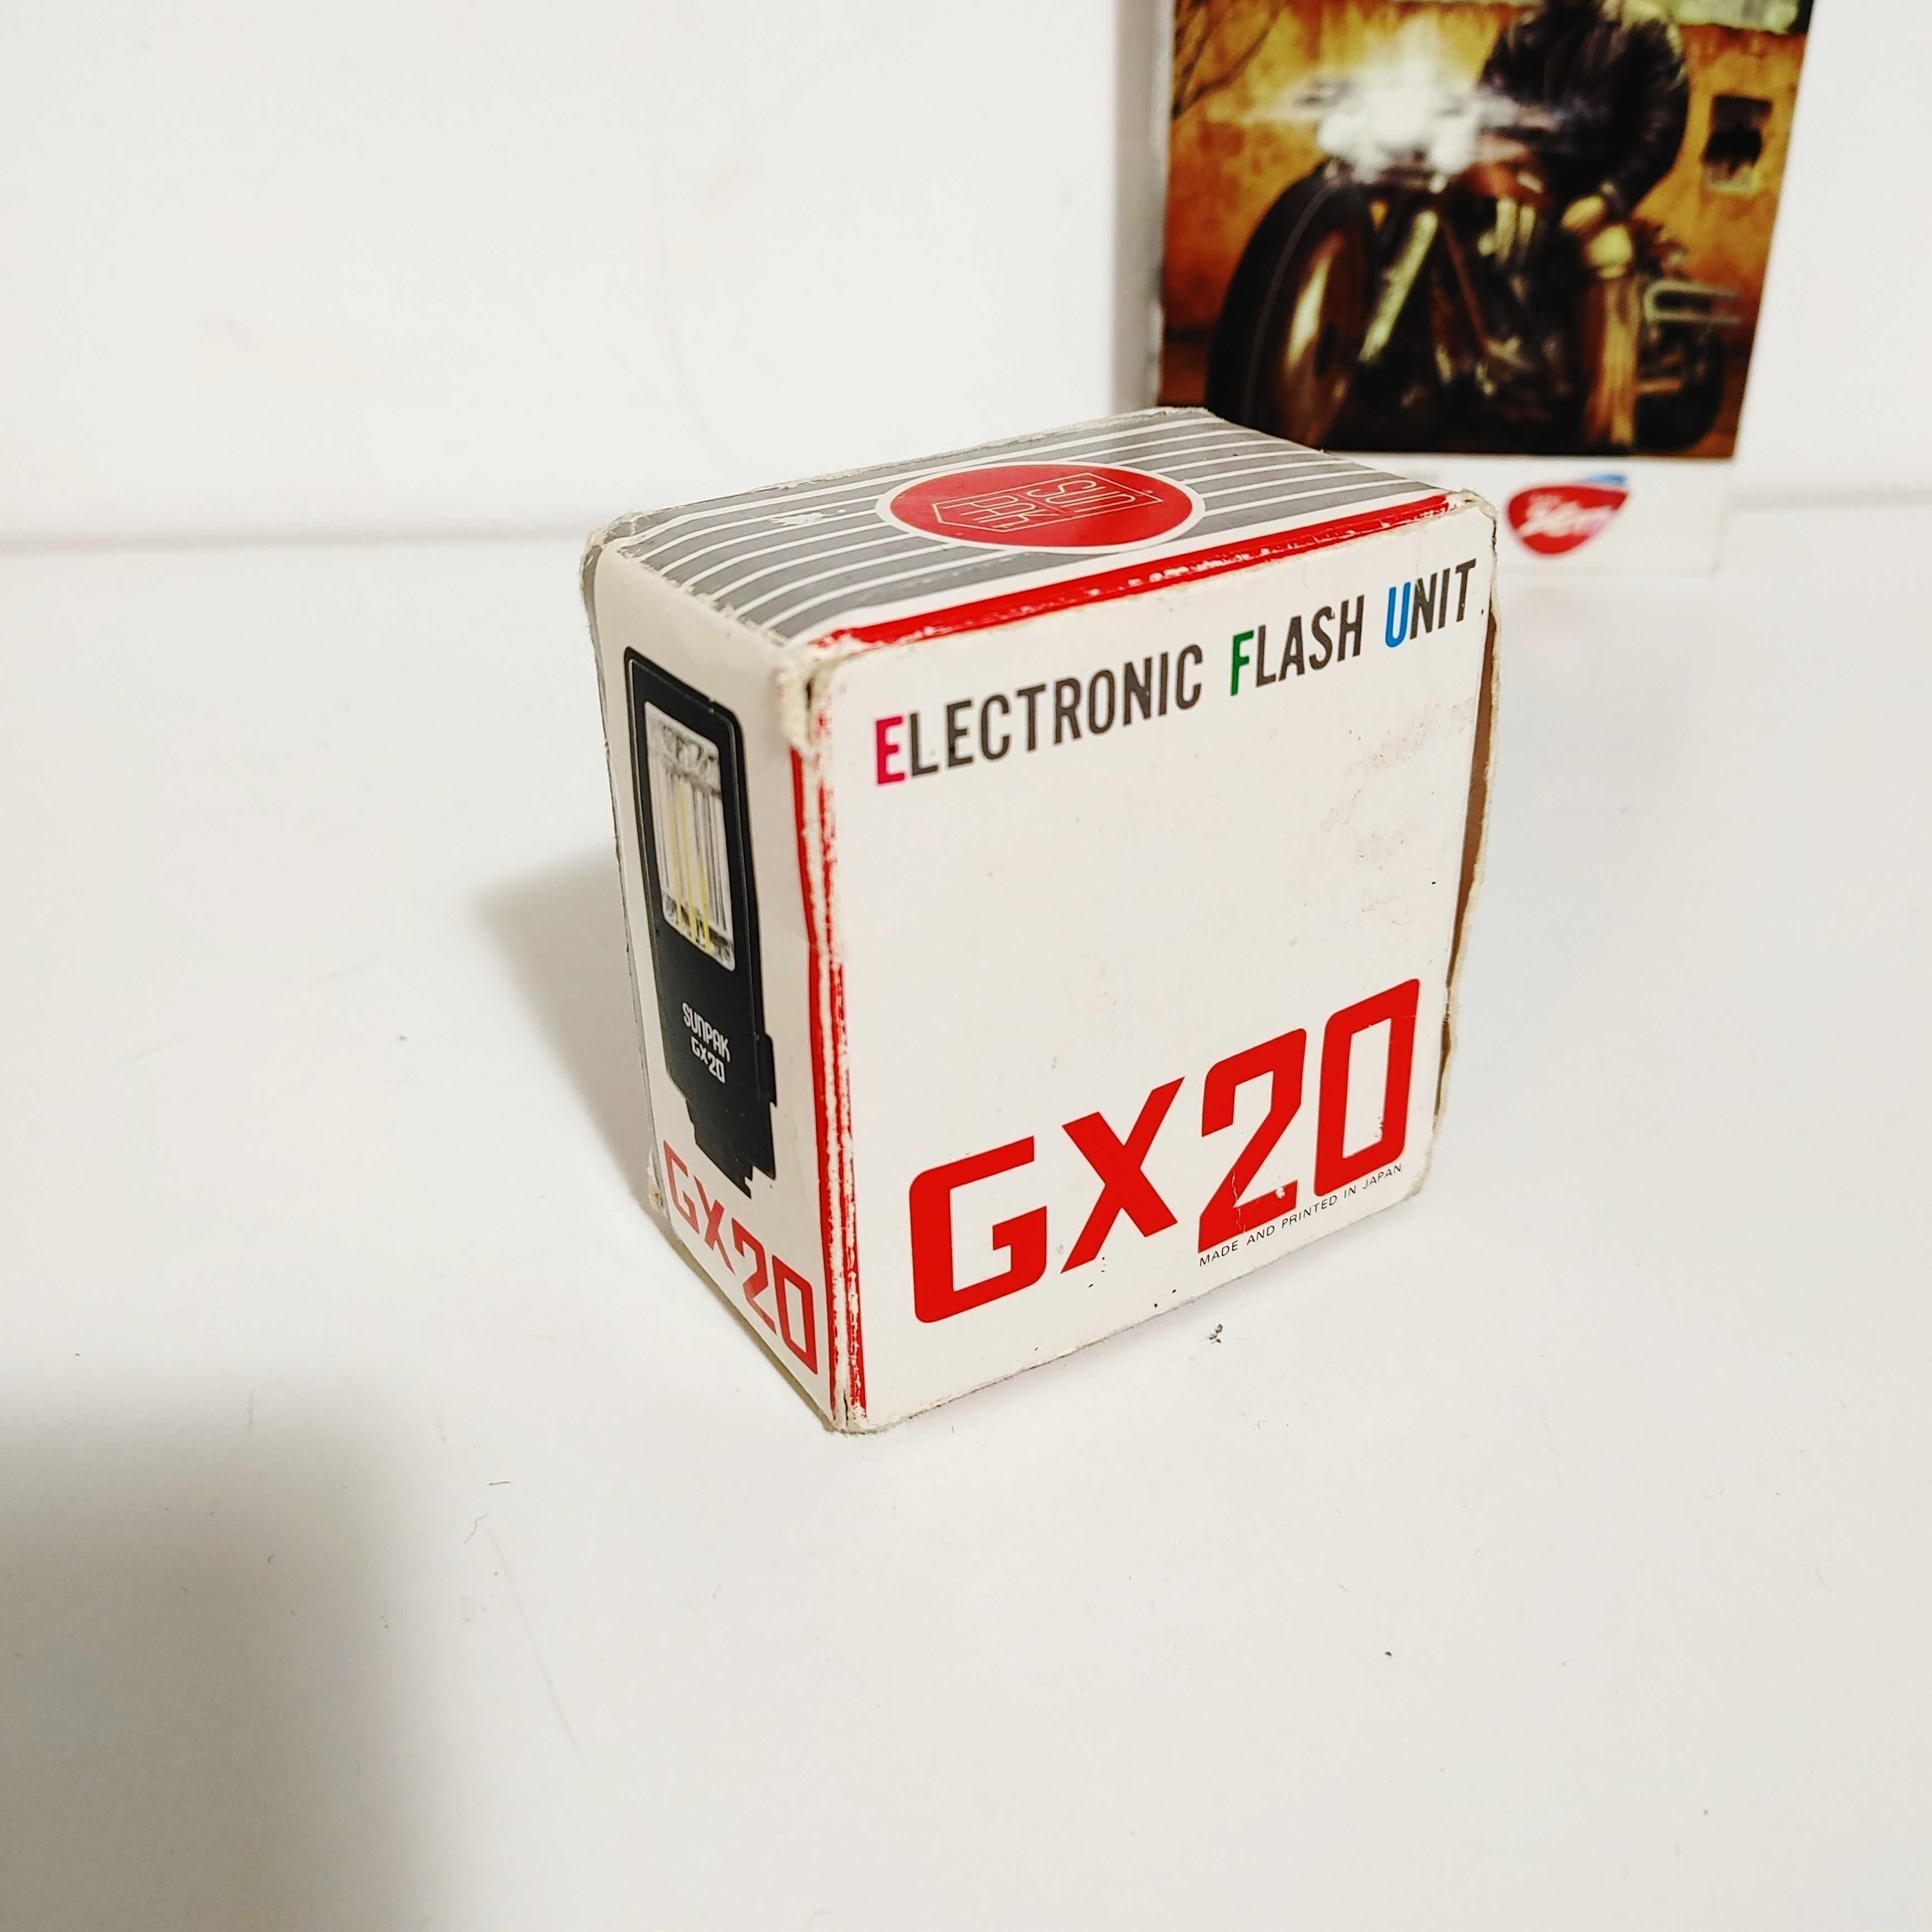 Lampa błyskowa SunPak GX20 do klasycznych aparatów fotograficznych